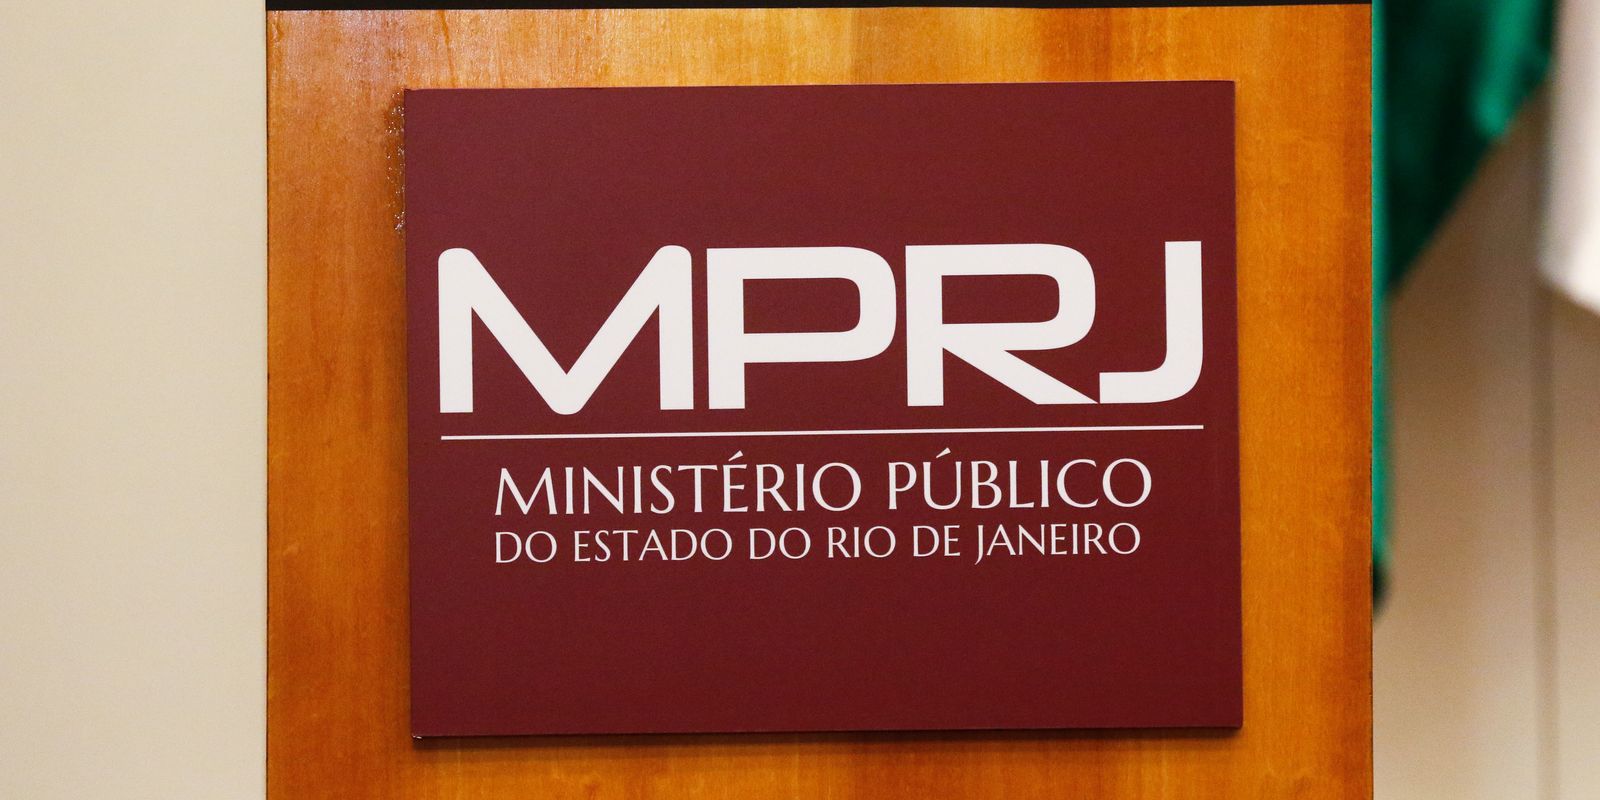 Ação de milícias foi crime mais denunciado pela população ao MPRJ